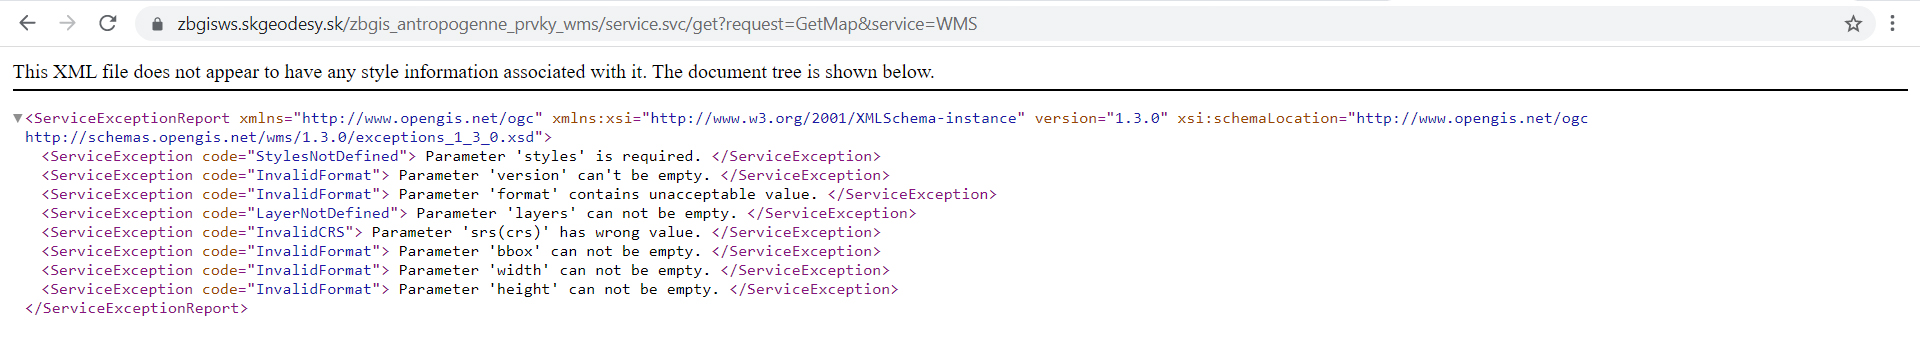 XML odpoveď po zadaní GetMap